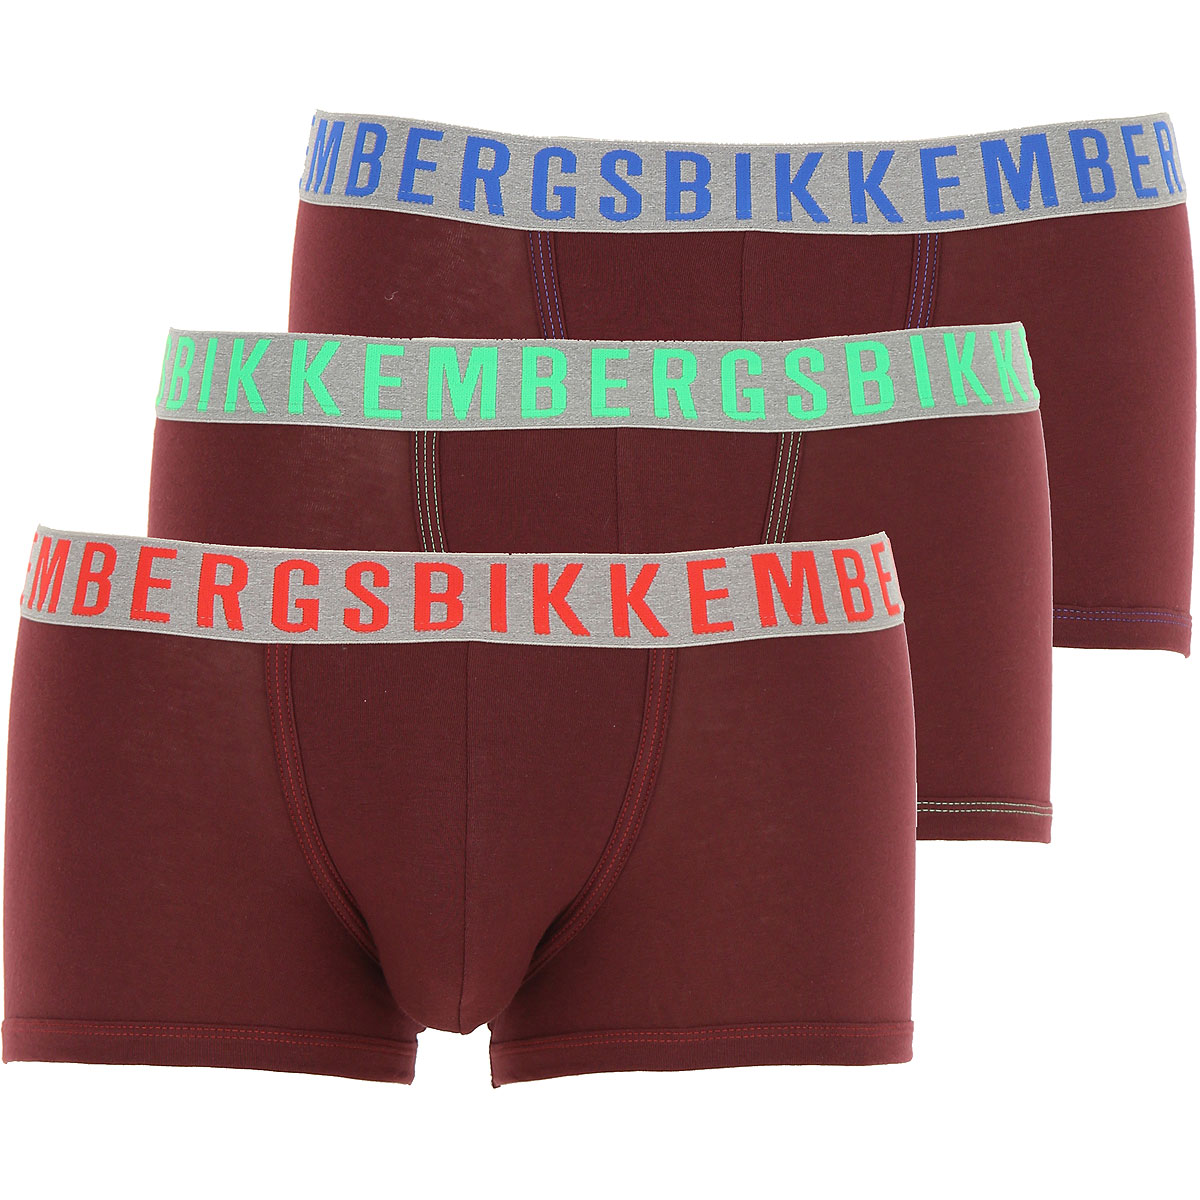 Dirk Bikkembergs Boxer Shorts für Herren, Unterhose, Short, Boxer Günstig im Outlet Sale, 3 Pack, Bordeauxrot, Baumwolle, 2017, L M S XL